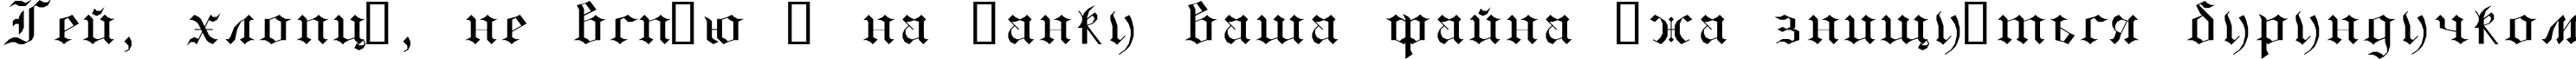 Пример написания шрифтом GothicE текста на украинском